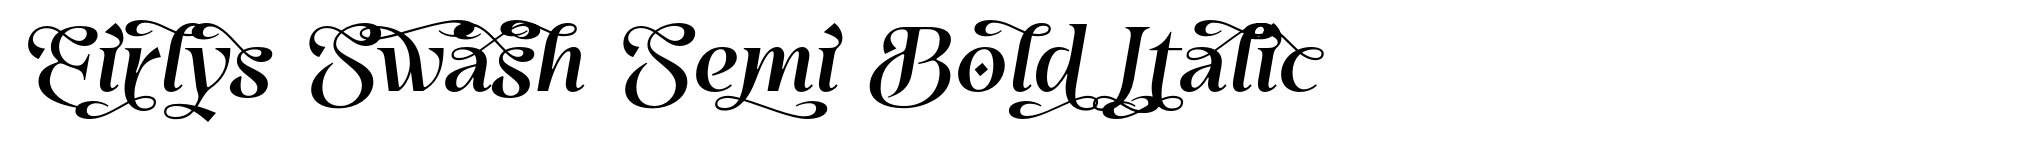 Eirlys Swash Semi Bold Italic image